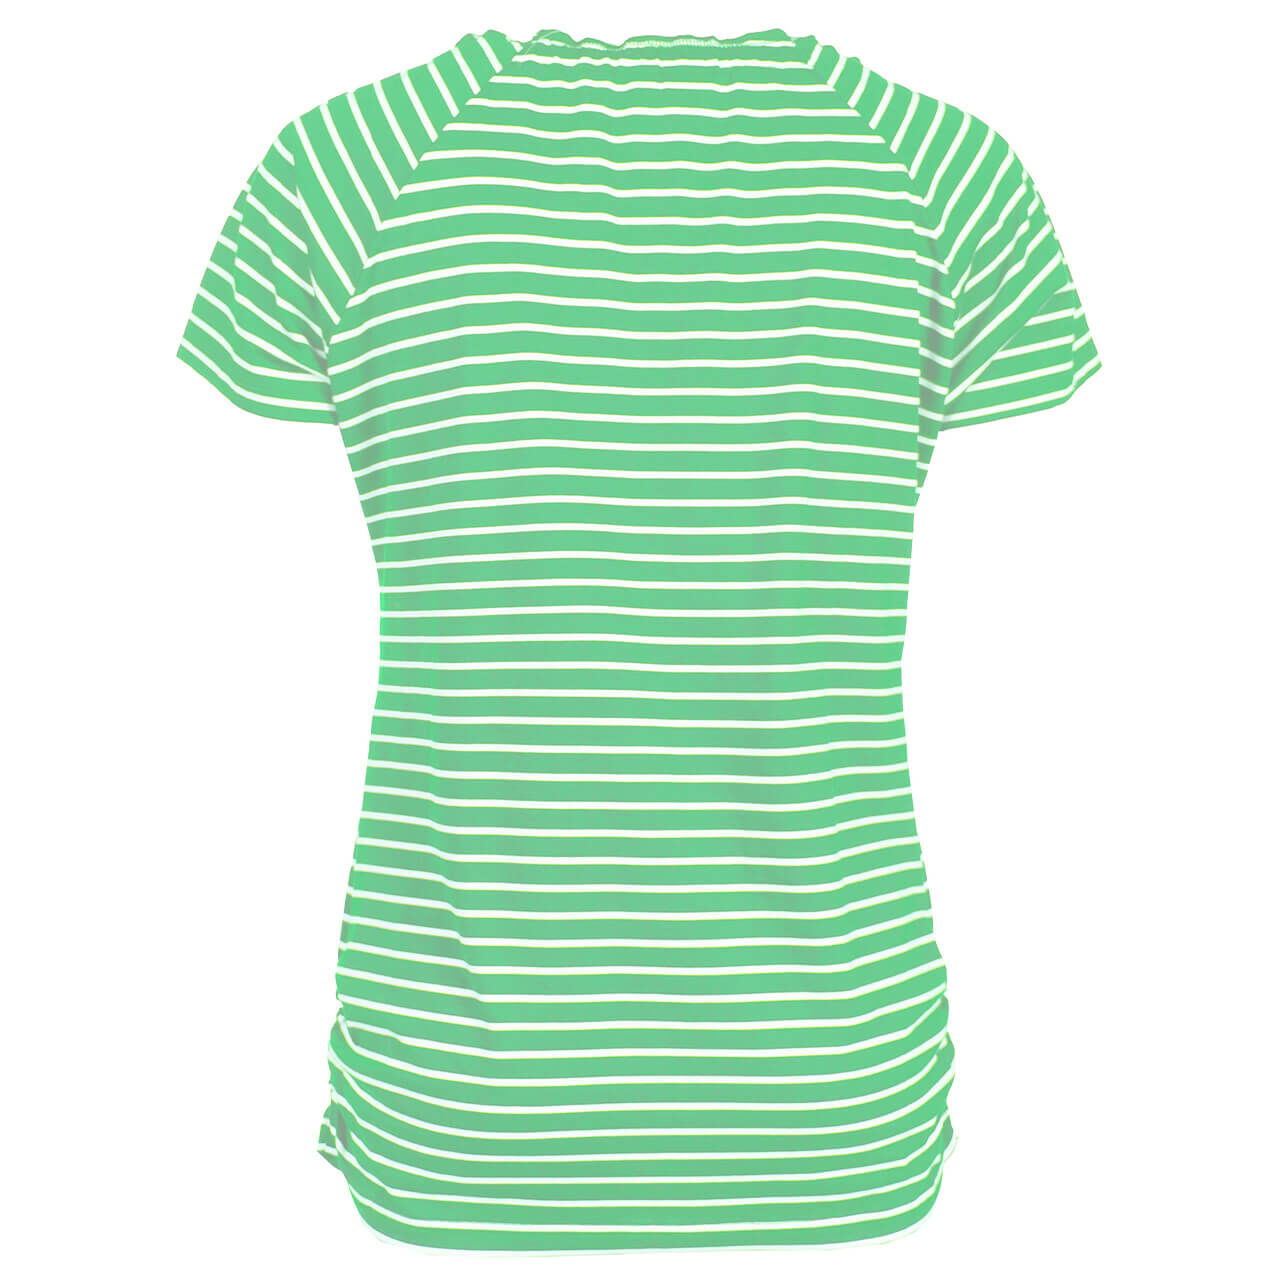 Soquesto T-Shirt für Damen in Grün gestreift, FarbNr.: 4025